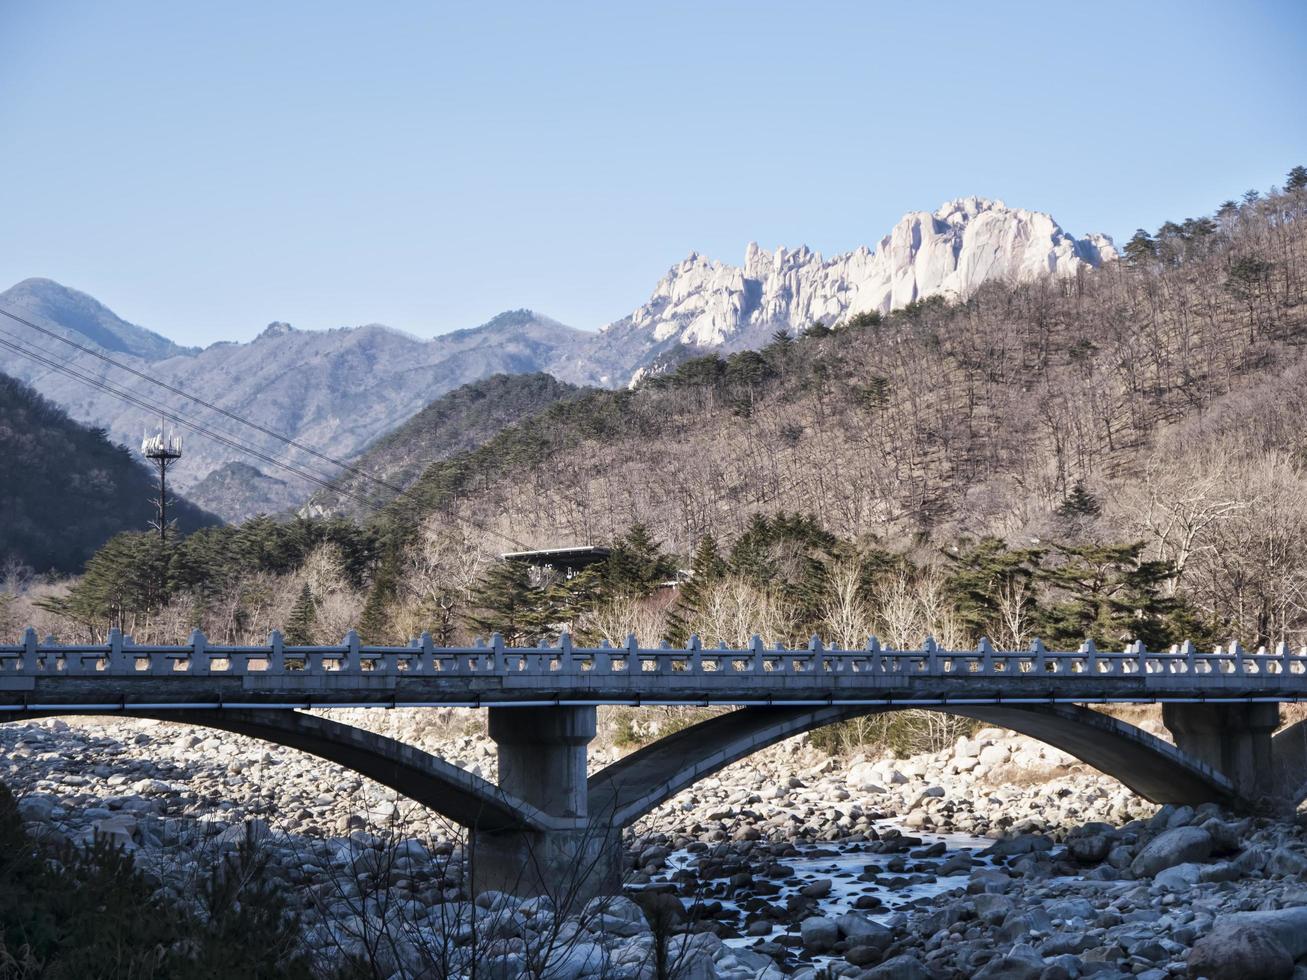 pont dans le parc national de seoraksan, corée du sud photo